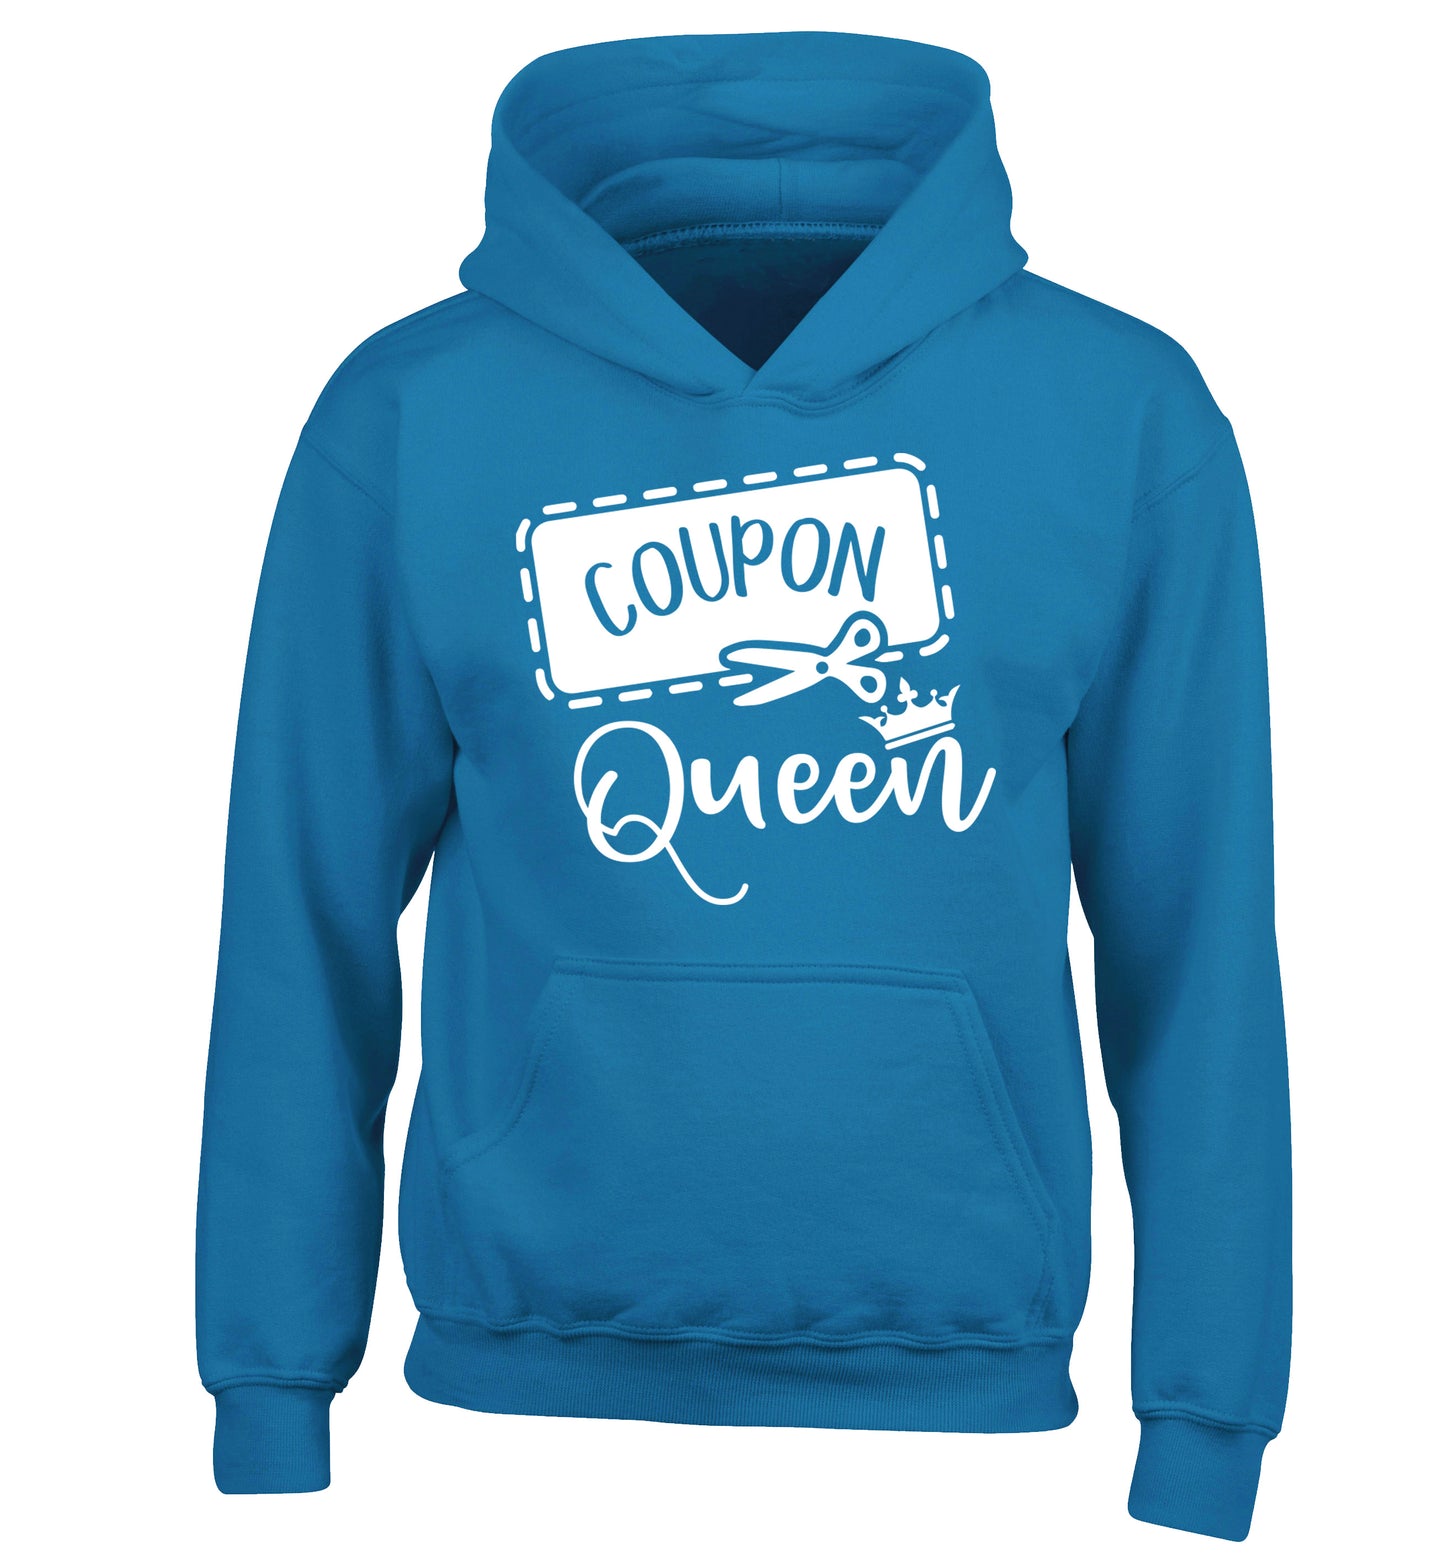 Coupon Queen children's blue hoodie 12-13 Years